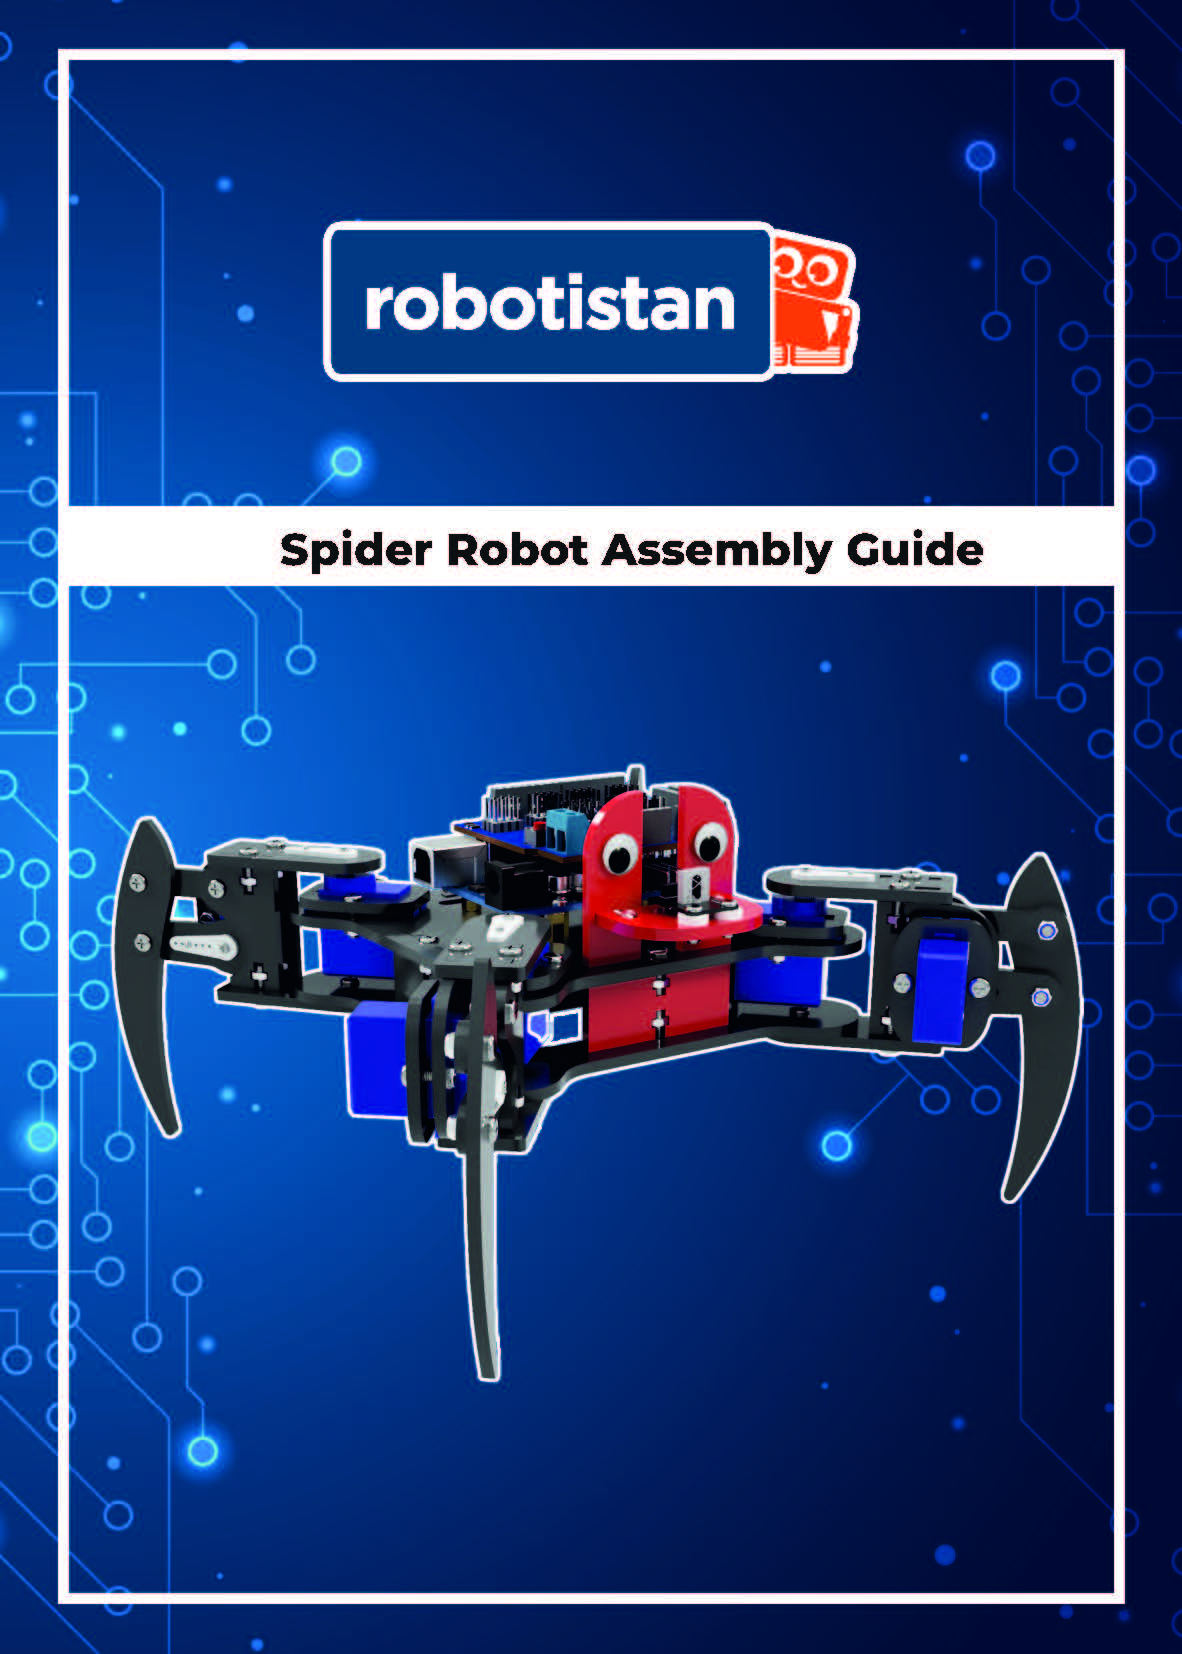 Örümcek Robot.jpg (245 KB)